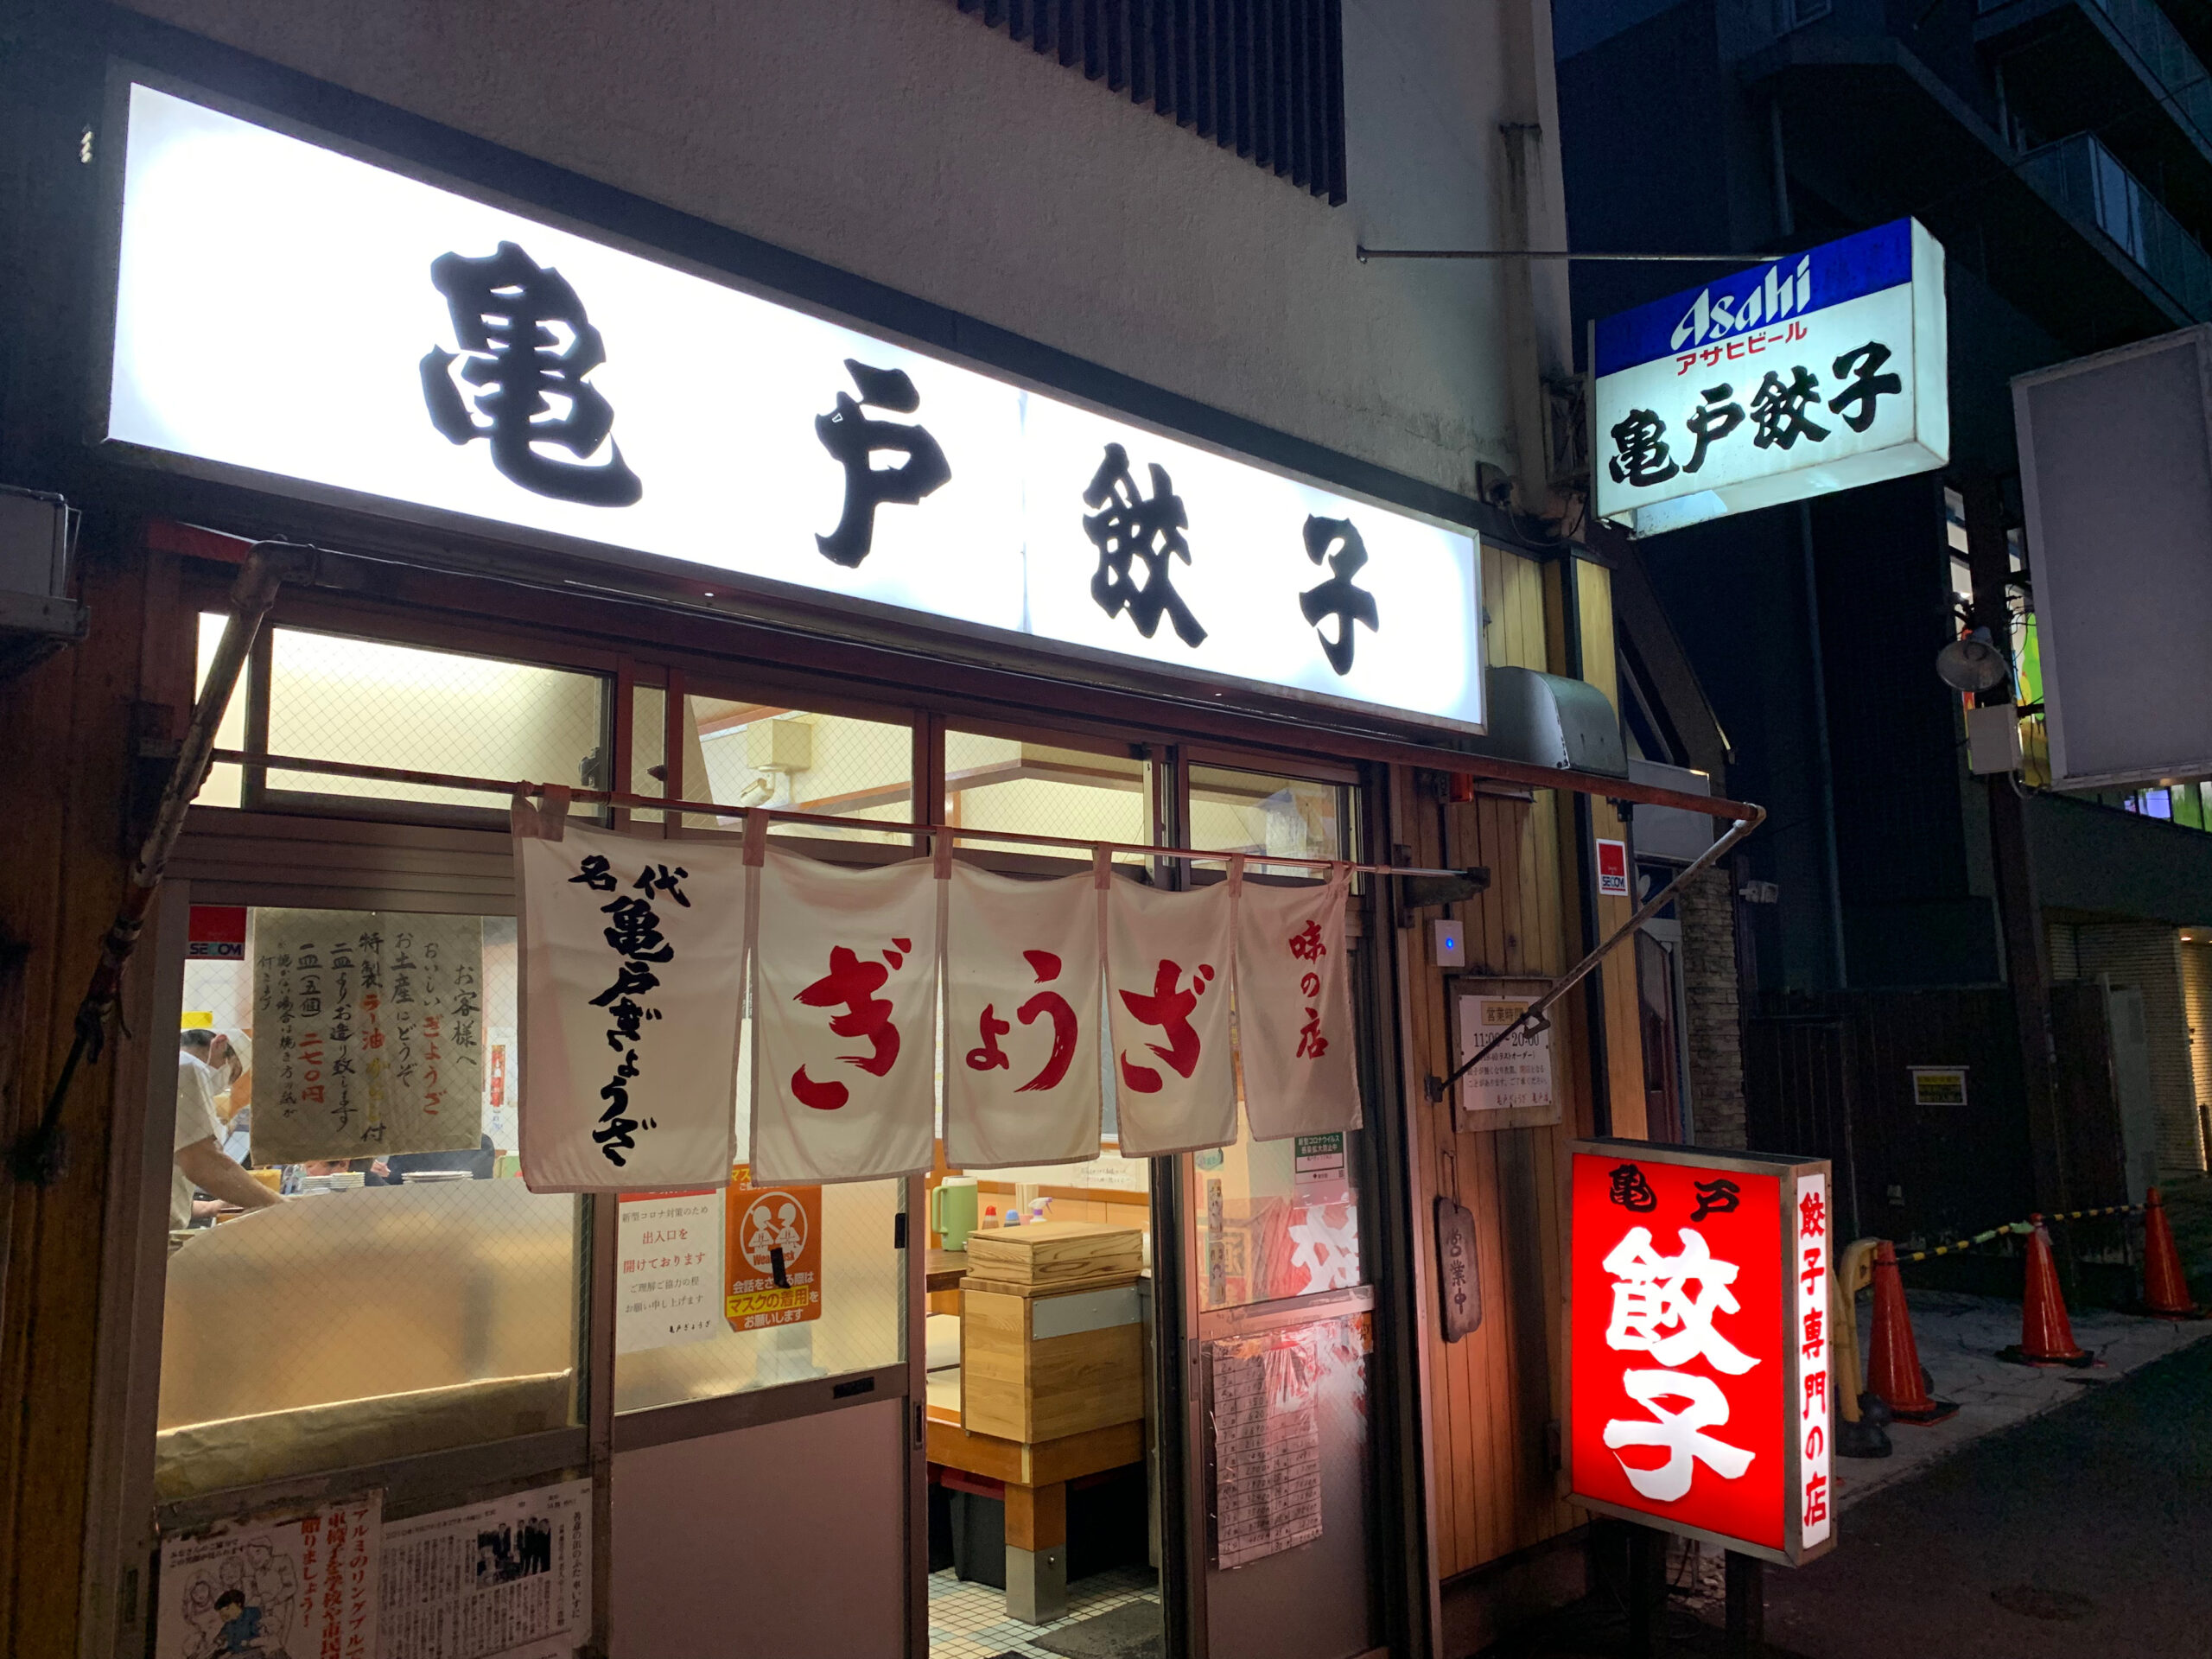 亀戸餃子本店での料理は餃子オンリーですが、美味しく楽しく頂く事ができました